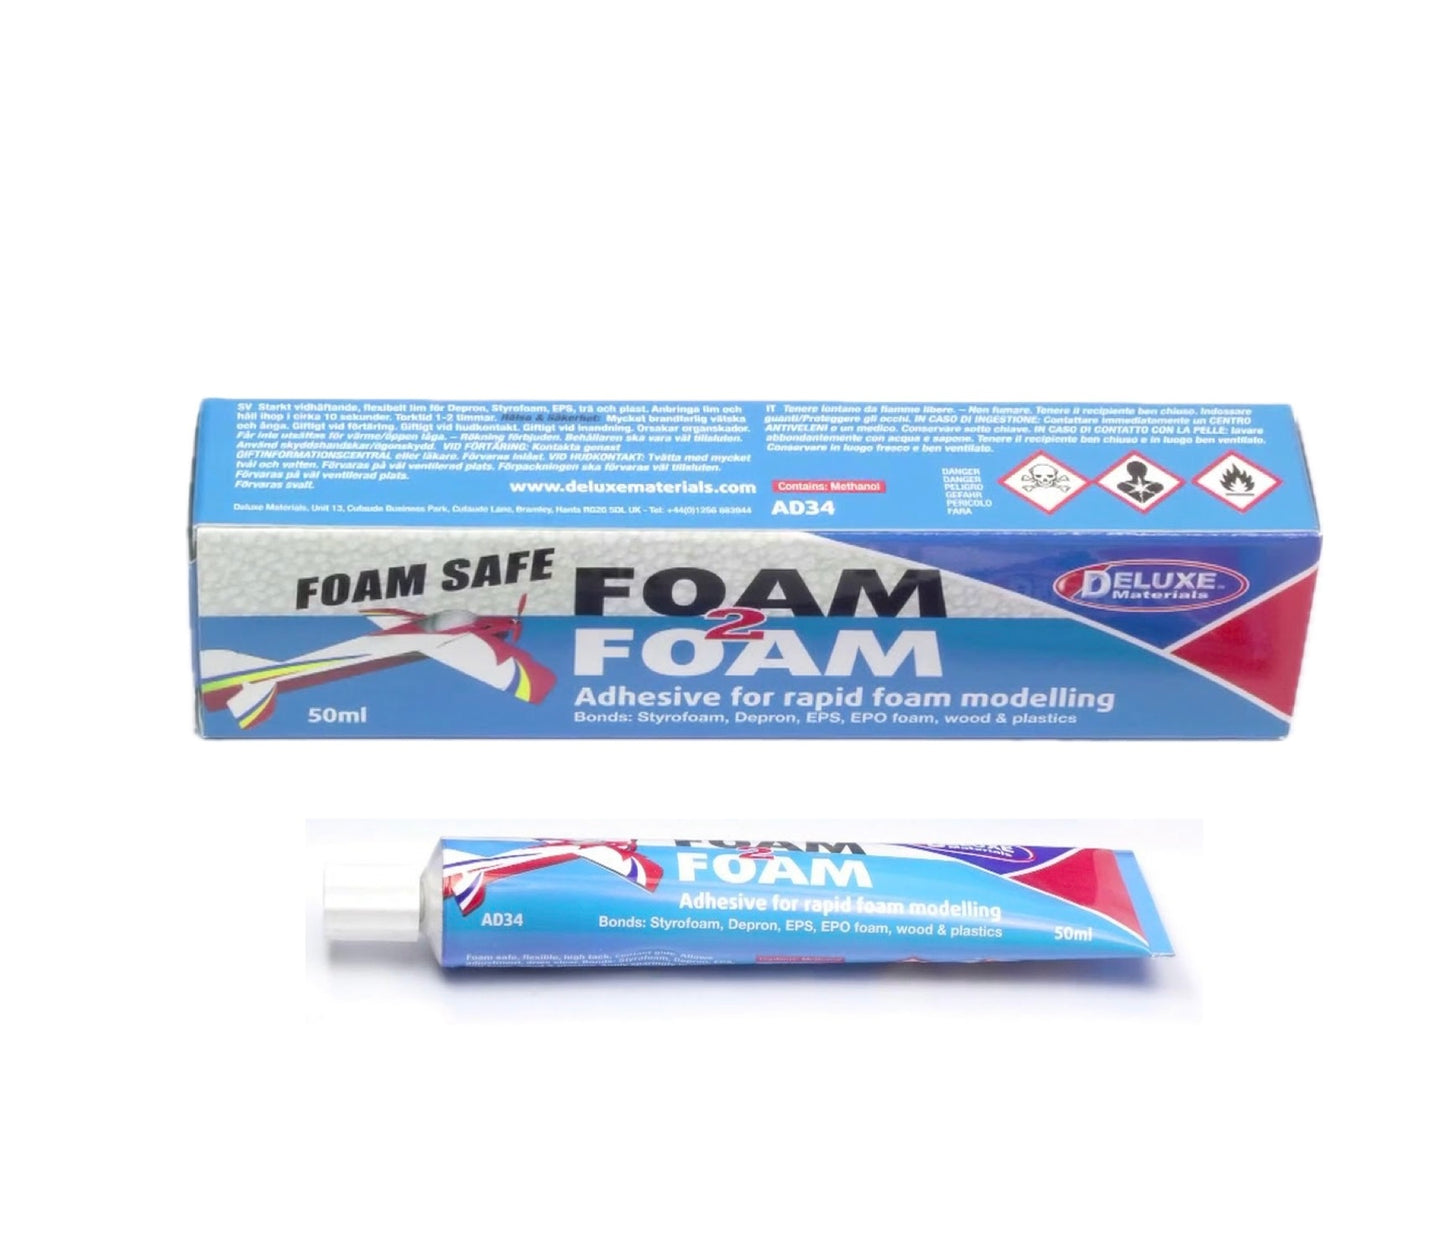 AD34 - Foam 2 Foam (Glue) 50ml